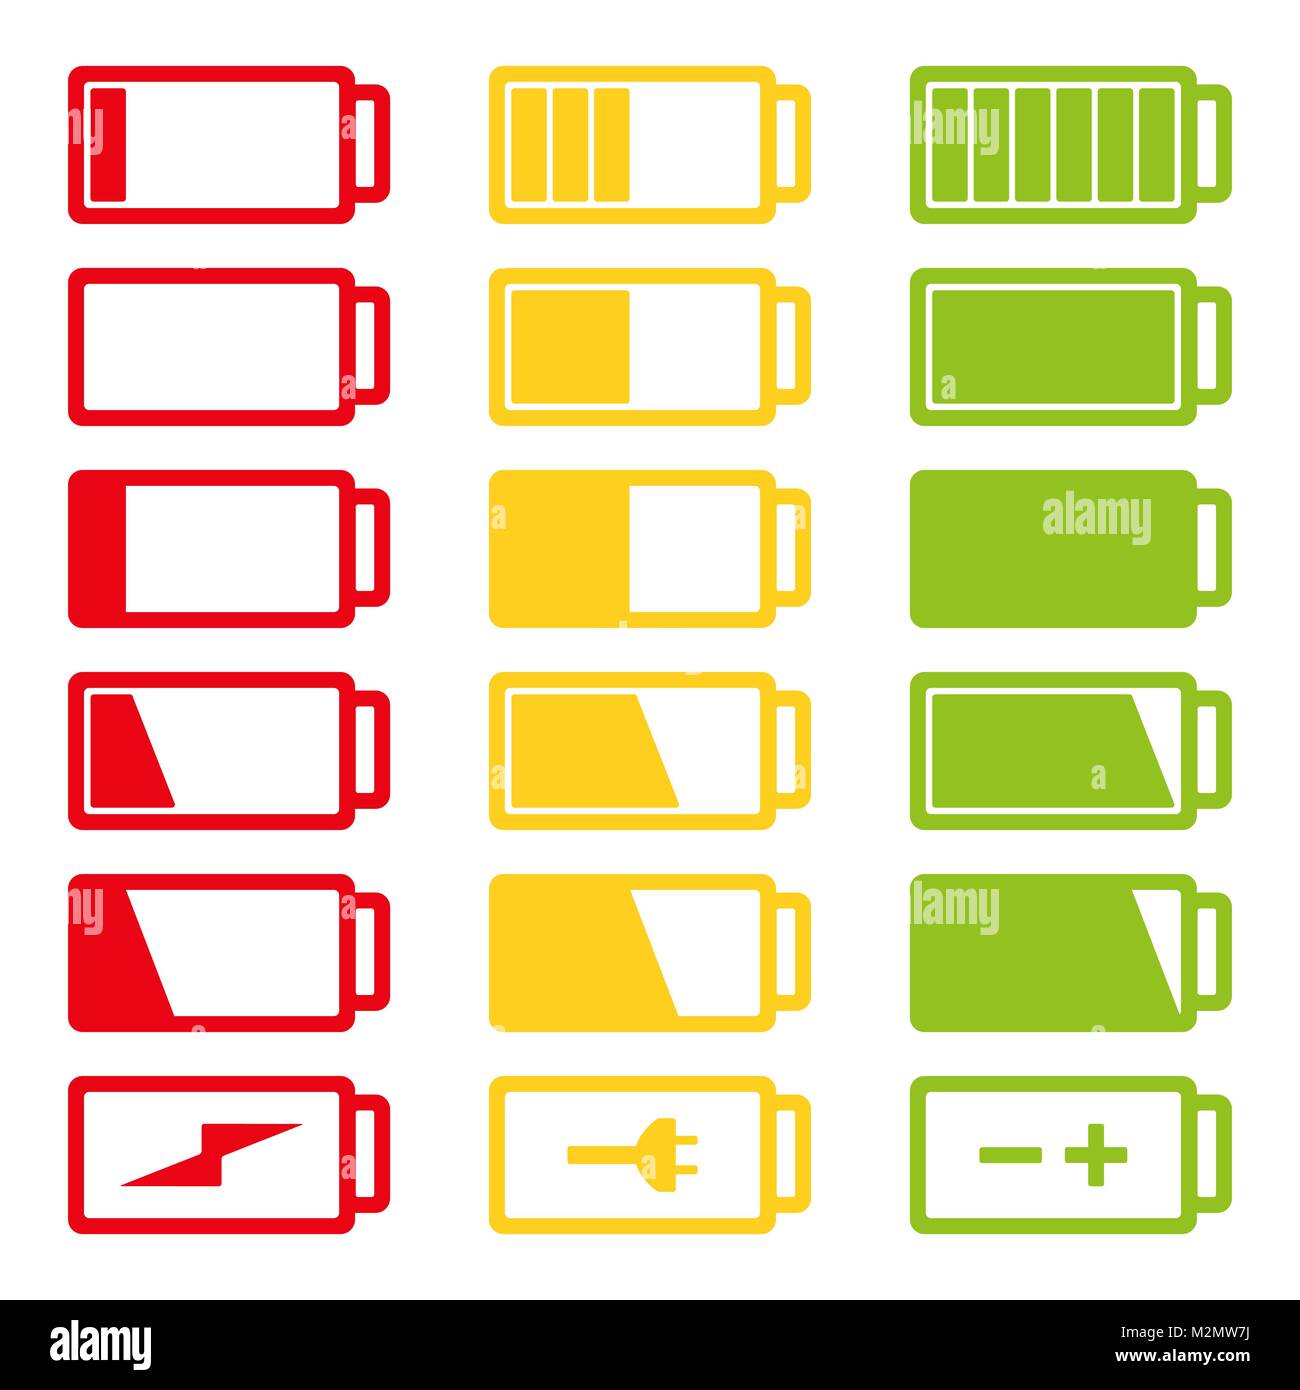 Batterie Icon Set Vector Illustration Auf Weissem Hintergrund Eps 10 Symbole Fur Die Akku Ladung Volle Und Niedrig Stock Vektorgrafik Alamy